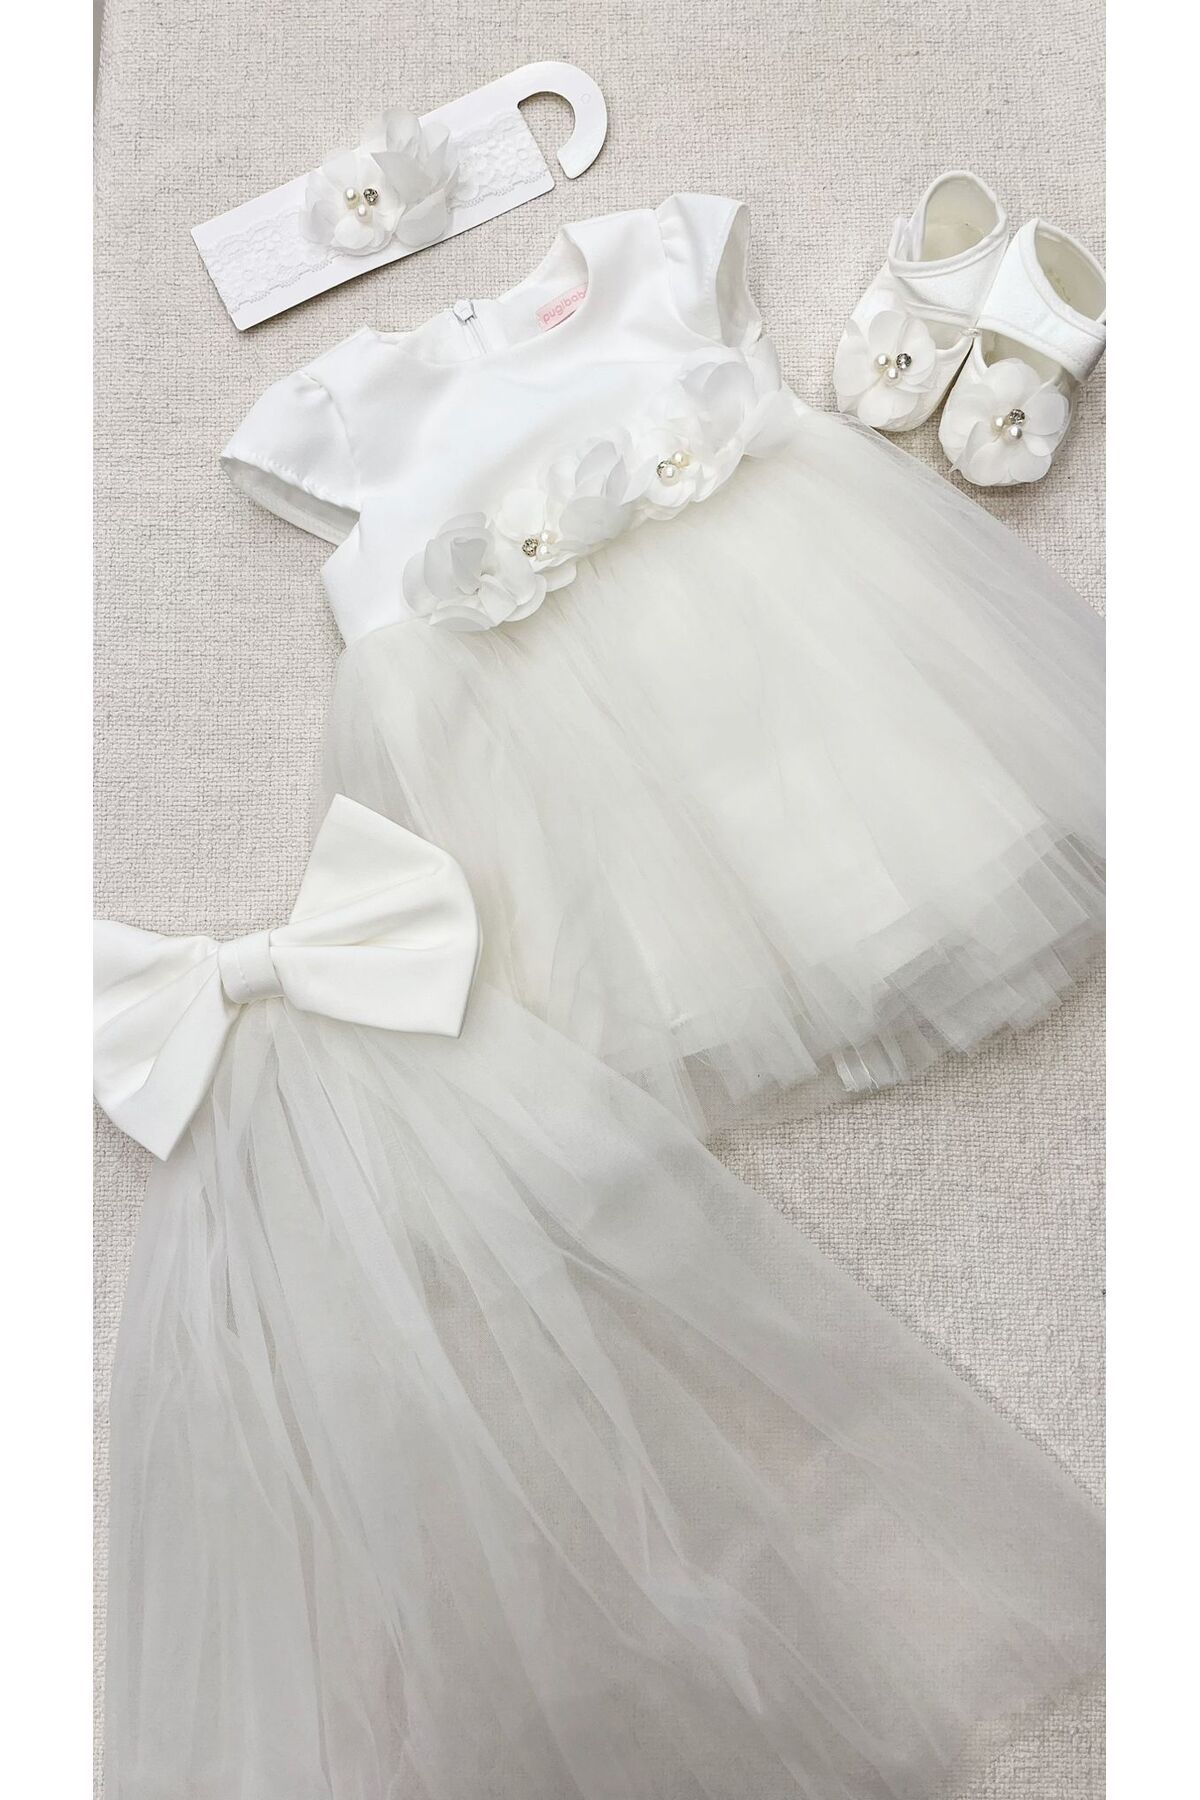 Pugi Baby Kız bebek mevlüt elbise seti tüllü model arkası kuyruklu takılıp çıkarılabilir